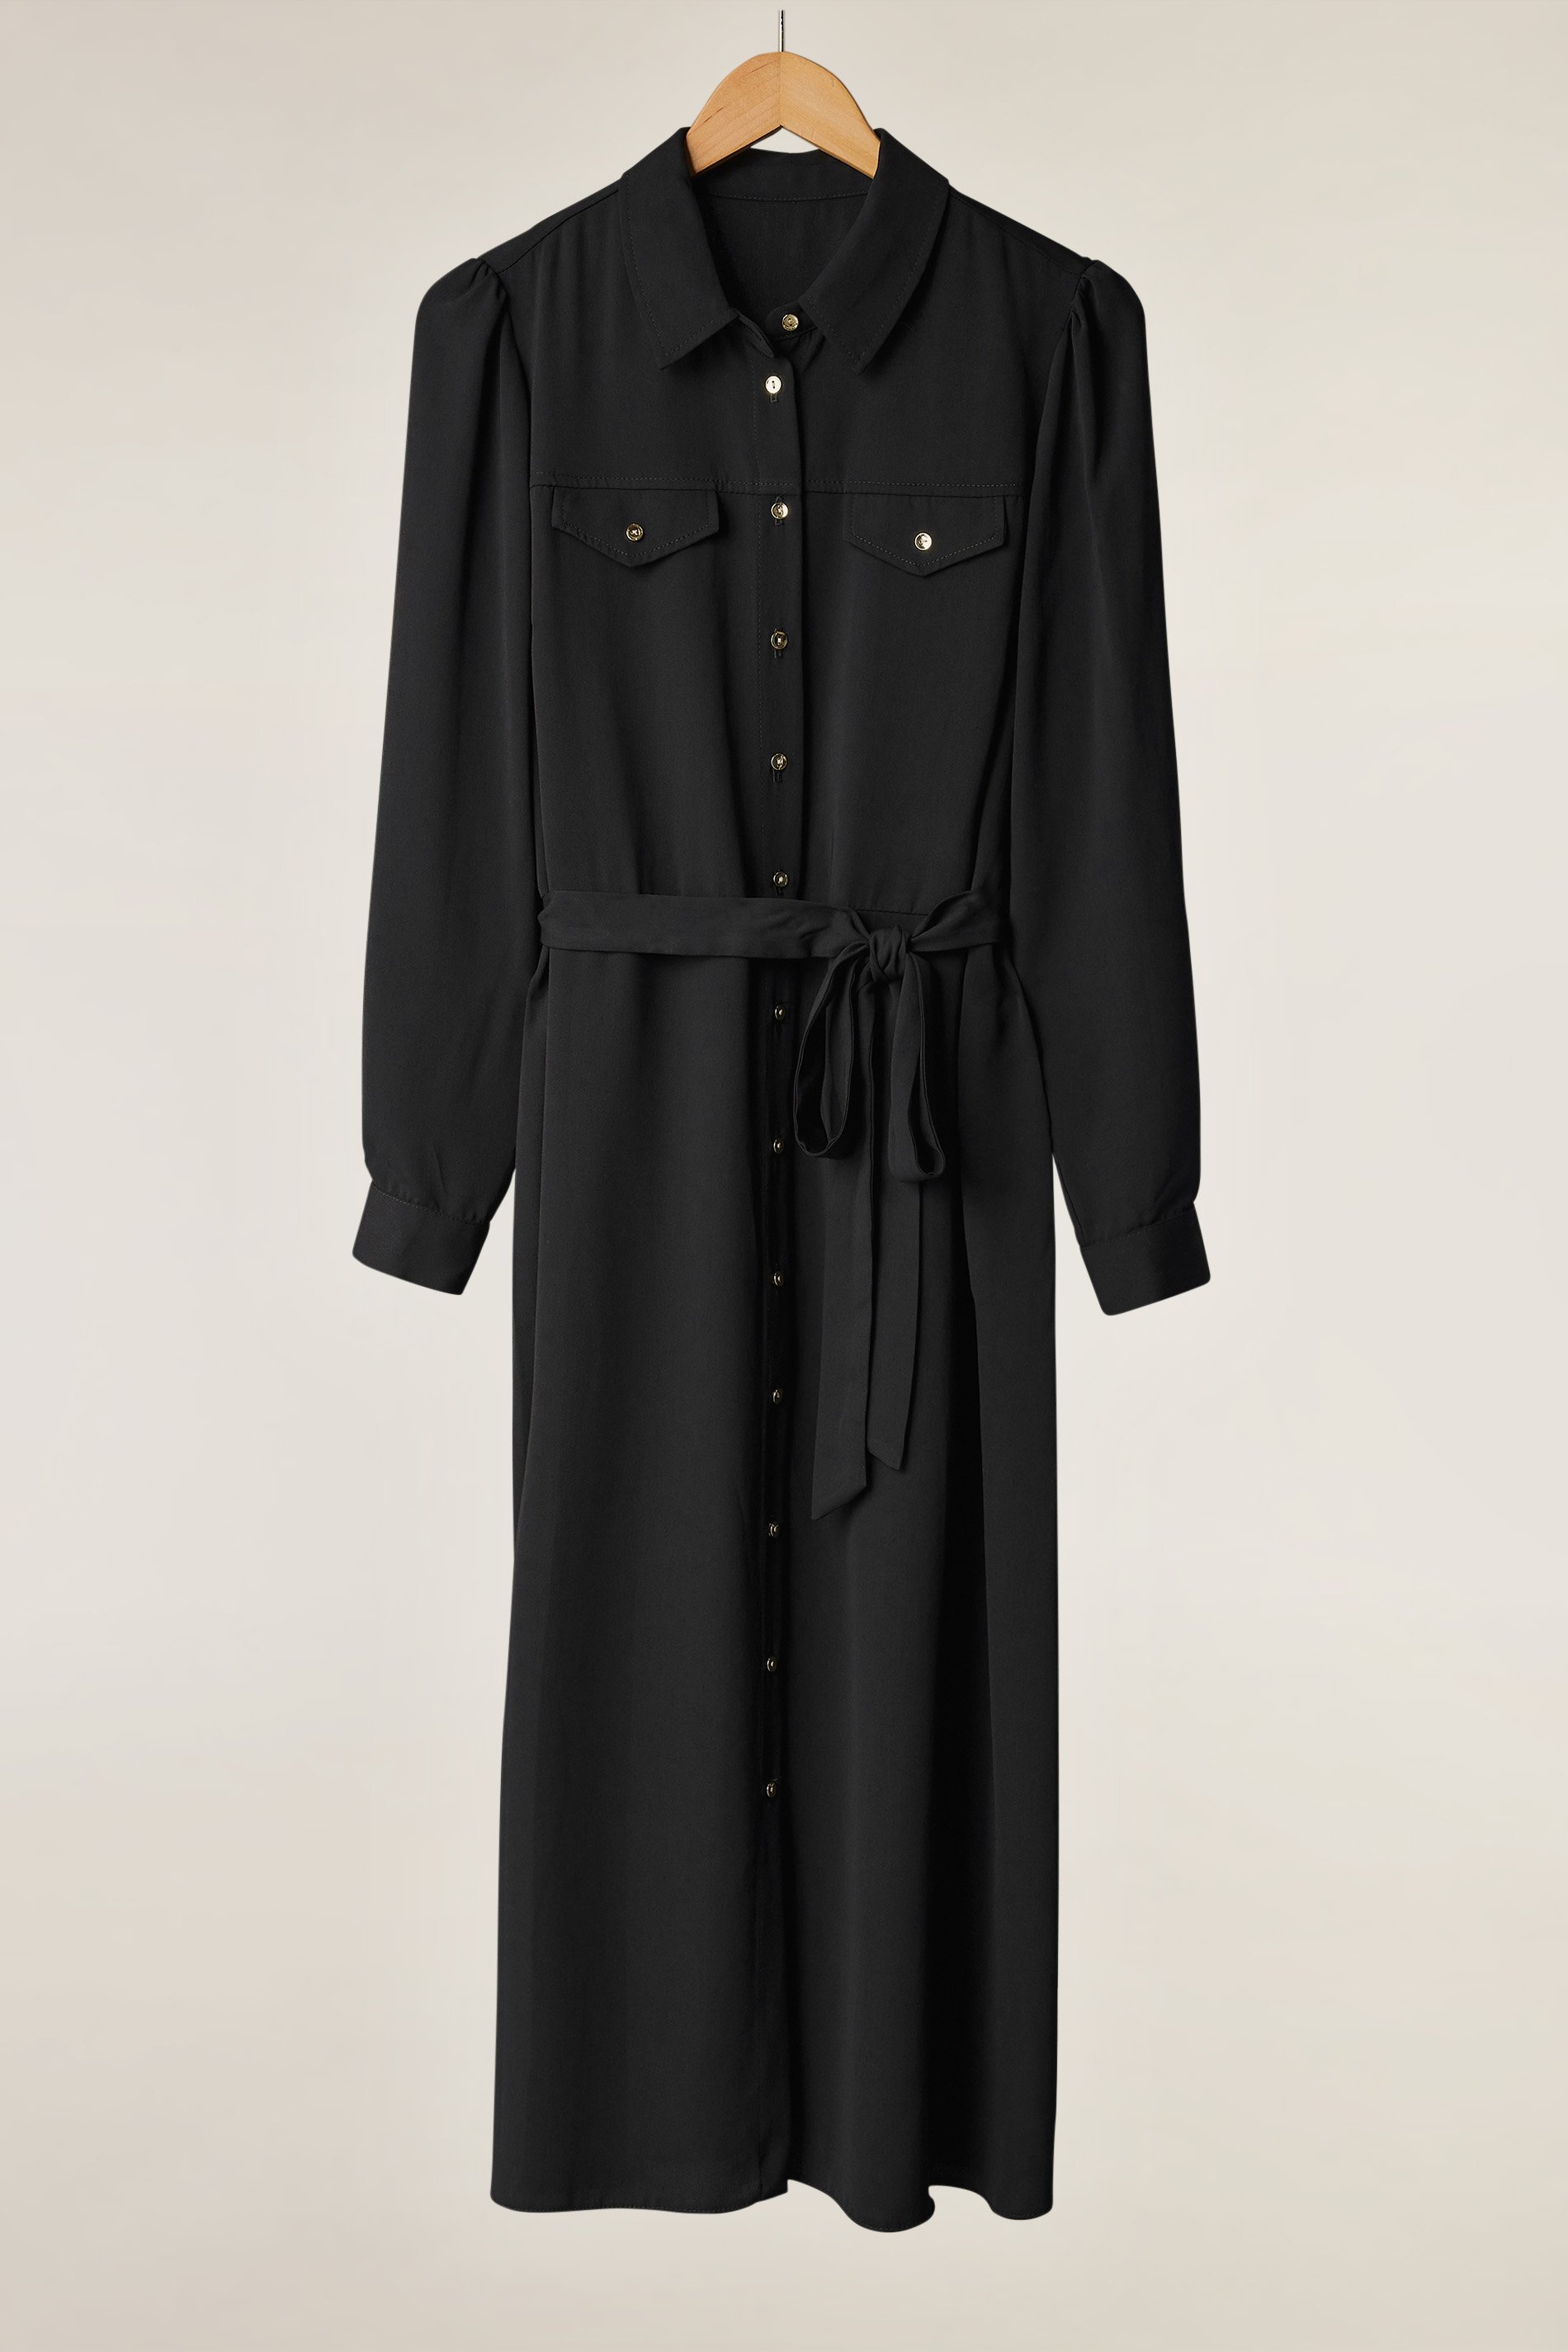 EVANS Plus Size Black Tie Waist Utility Dress | Evans